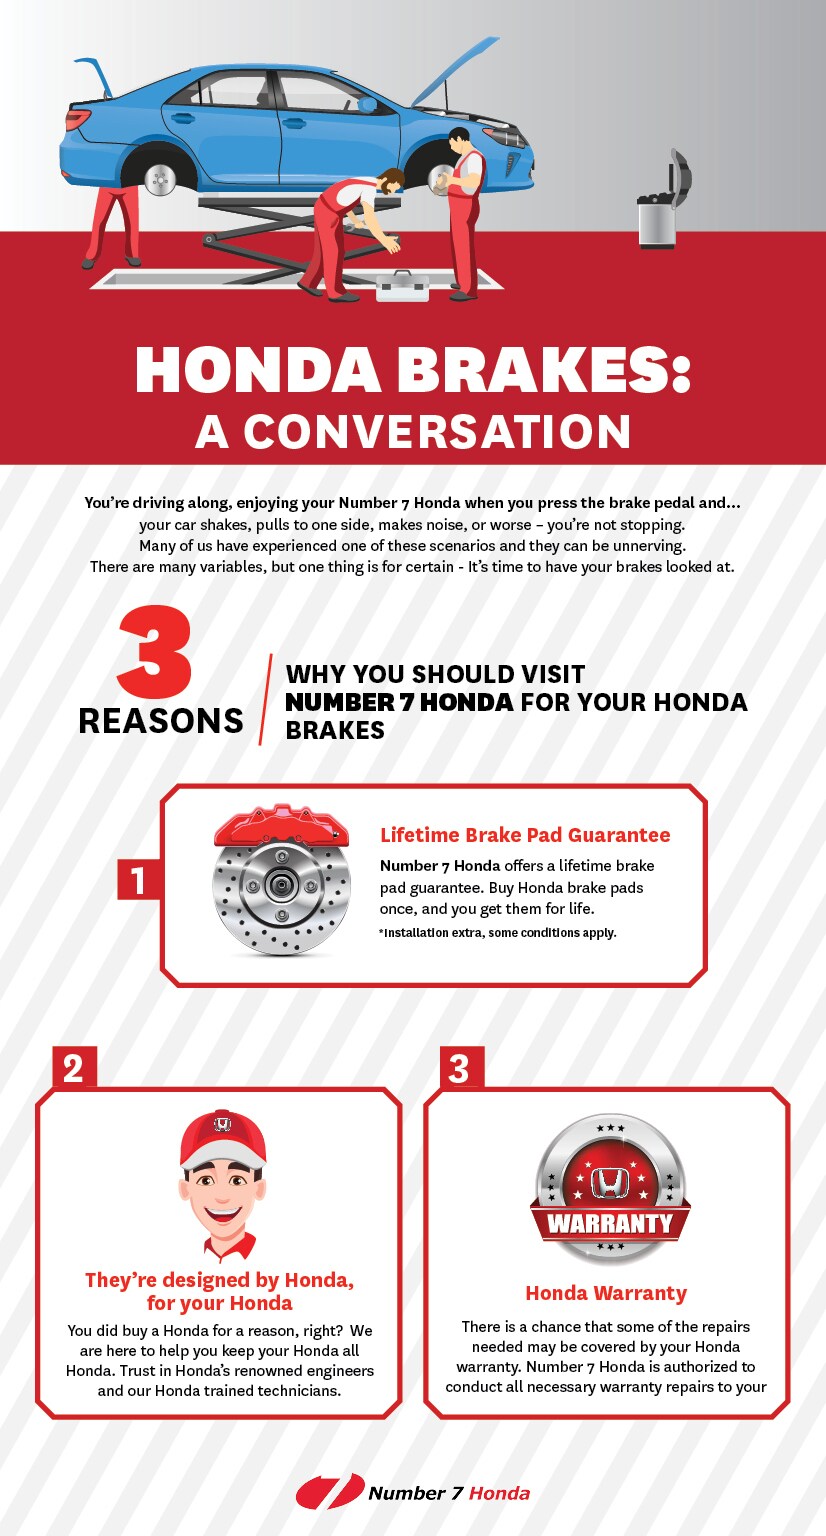 Honda Brake Repairs - Number 7 Honda